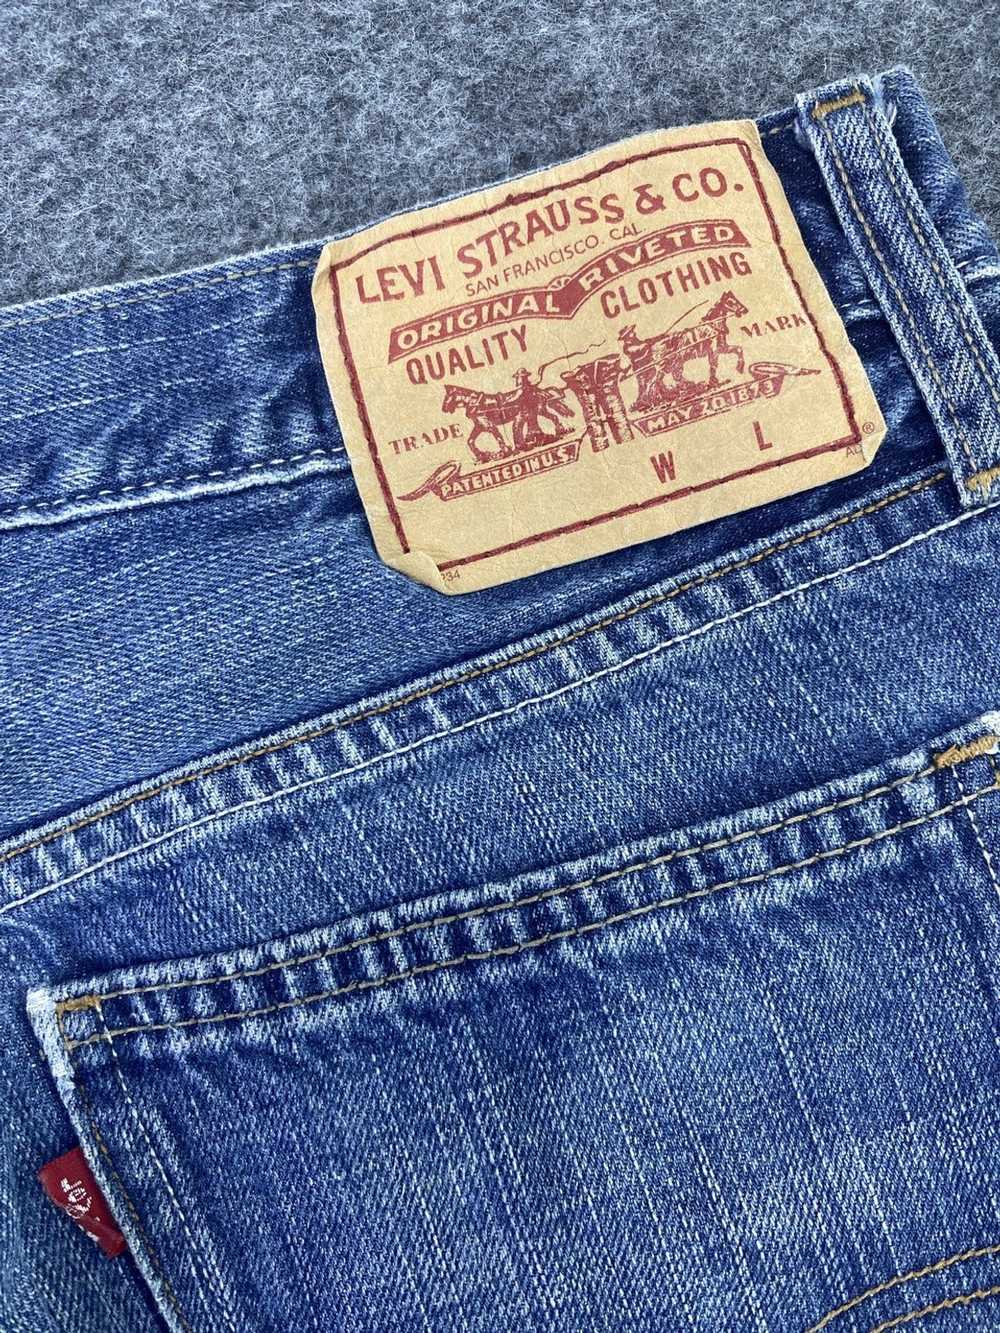 Jean × Levi's × Vintage Vintage Levis 507 Jeans B… - image 10